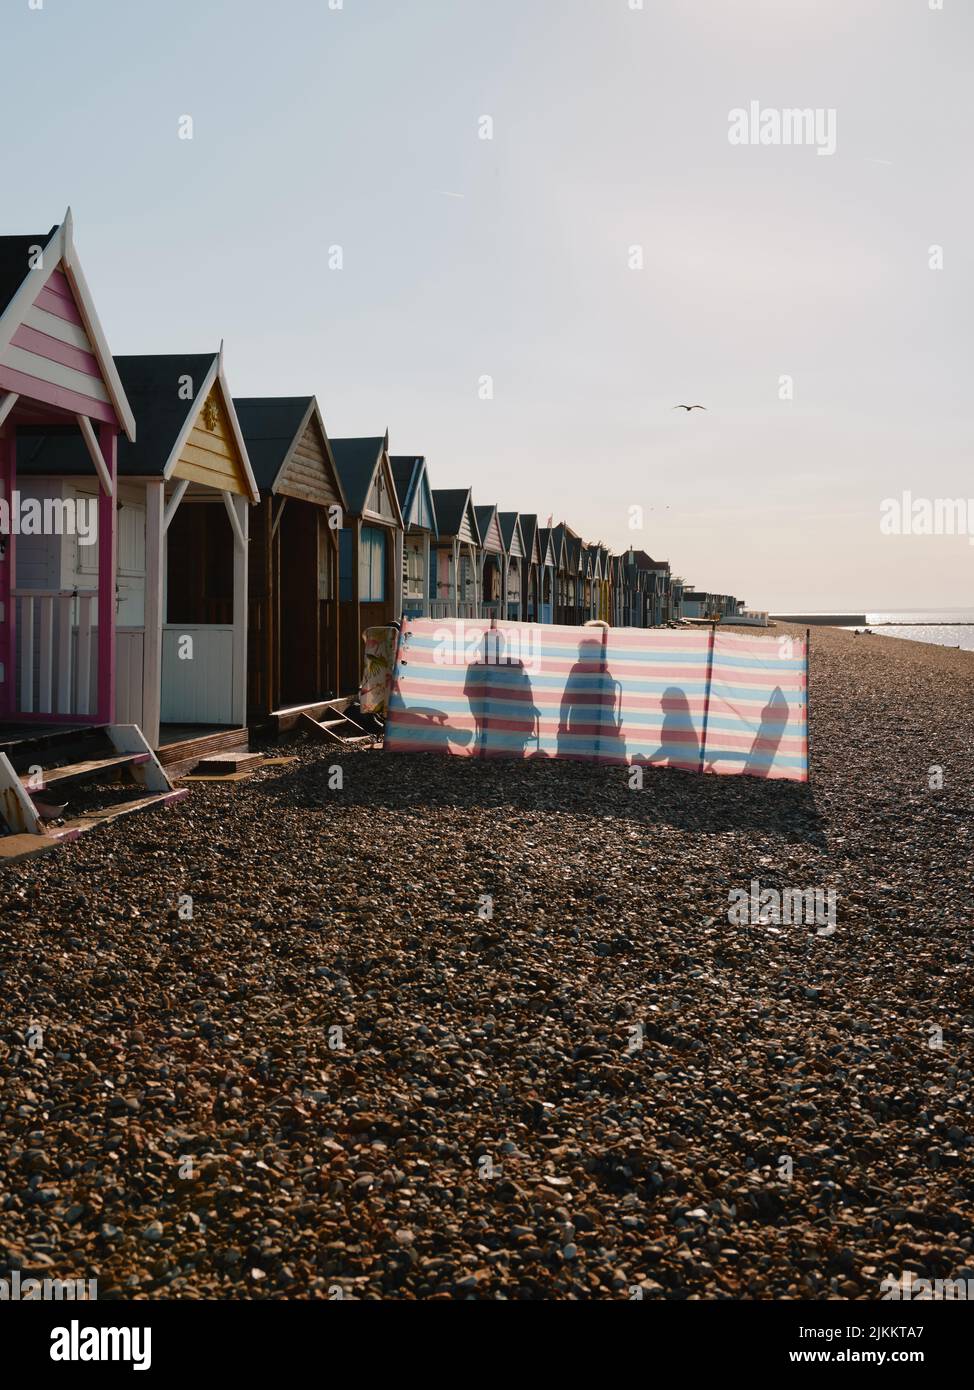 La plage d'été, les cabanes de plage, le brise-vent et la famille appréciant une journée d'été sur la plage de galets de Herne Bay, côte nord du Kent, Angleterre, Royaume-Uni Banque D'Images